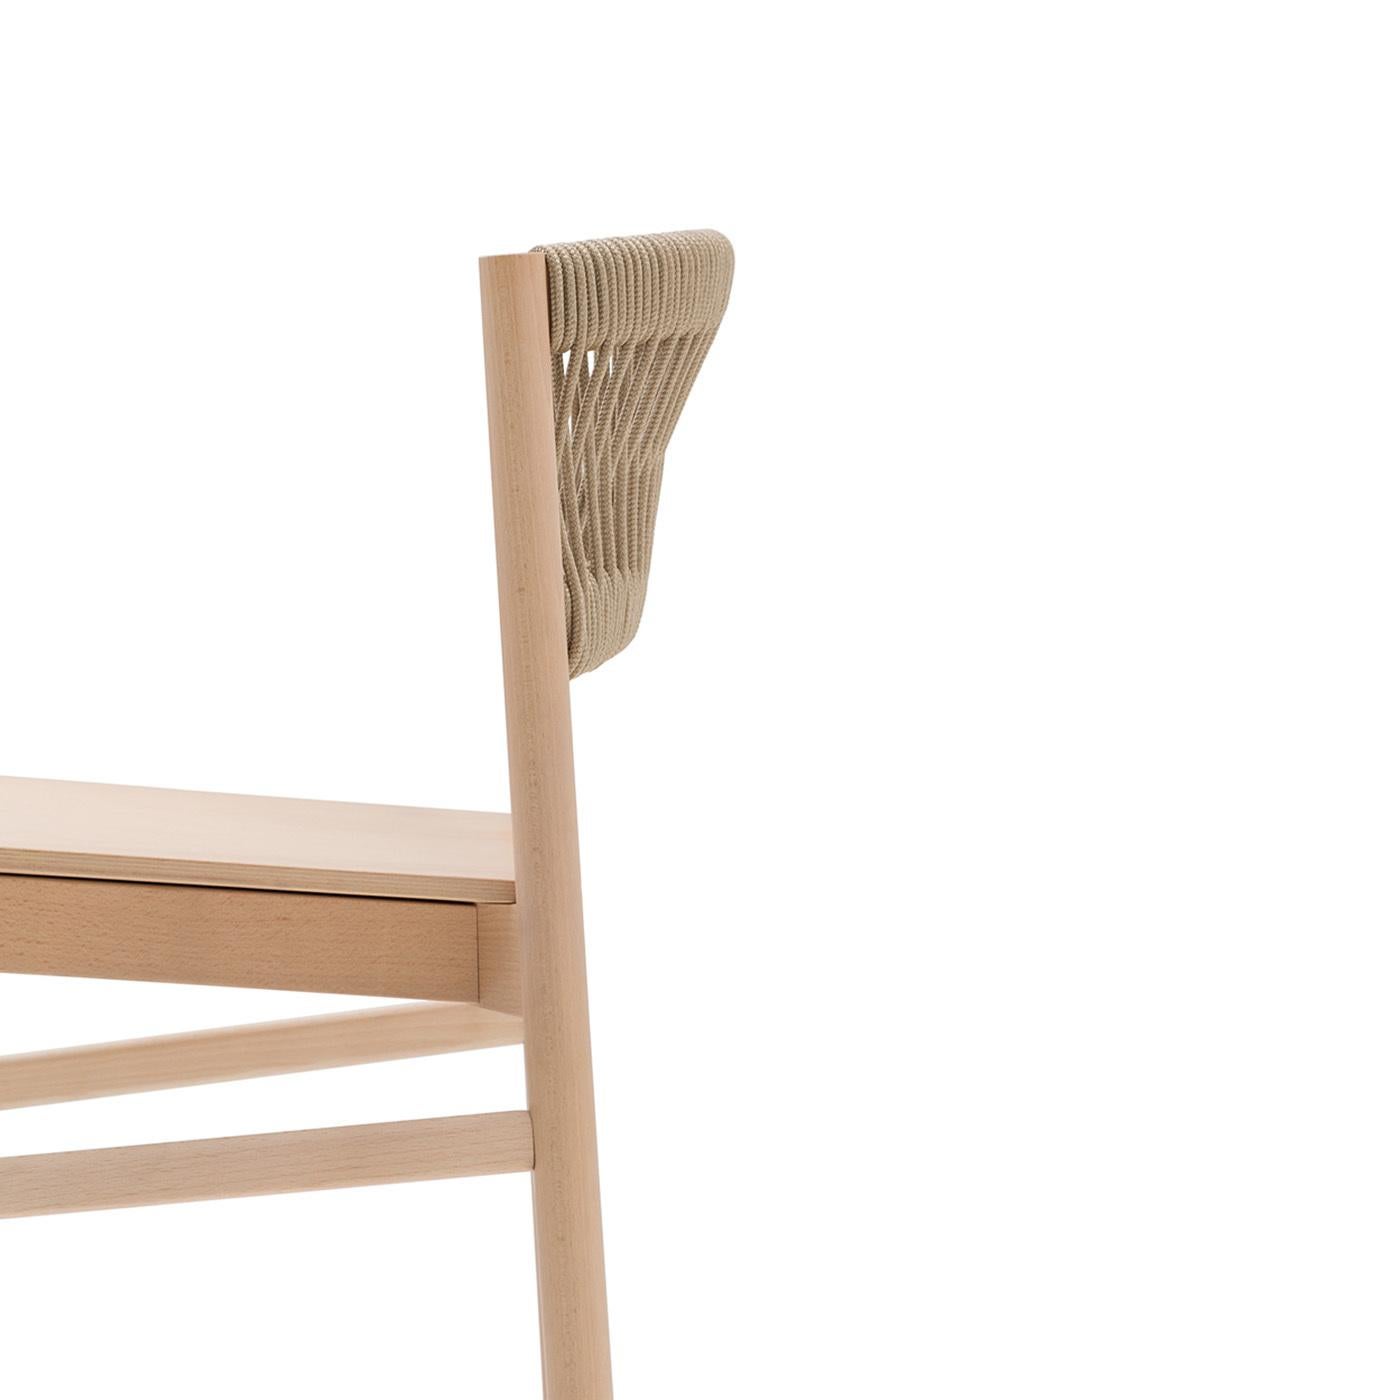 Objet de design intemporel, la chaise Load s'inspire du design scandinave et donne naissance à une nouvelle idée de la signification du mot contemporain.. La chaise est fabriquée en bois de hêtre massif... Dans la version Load Ropes, les cordes ont